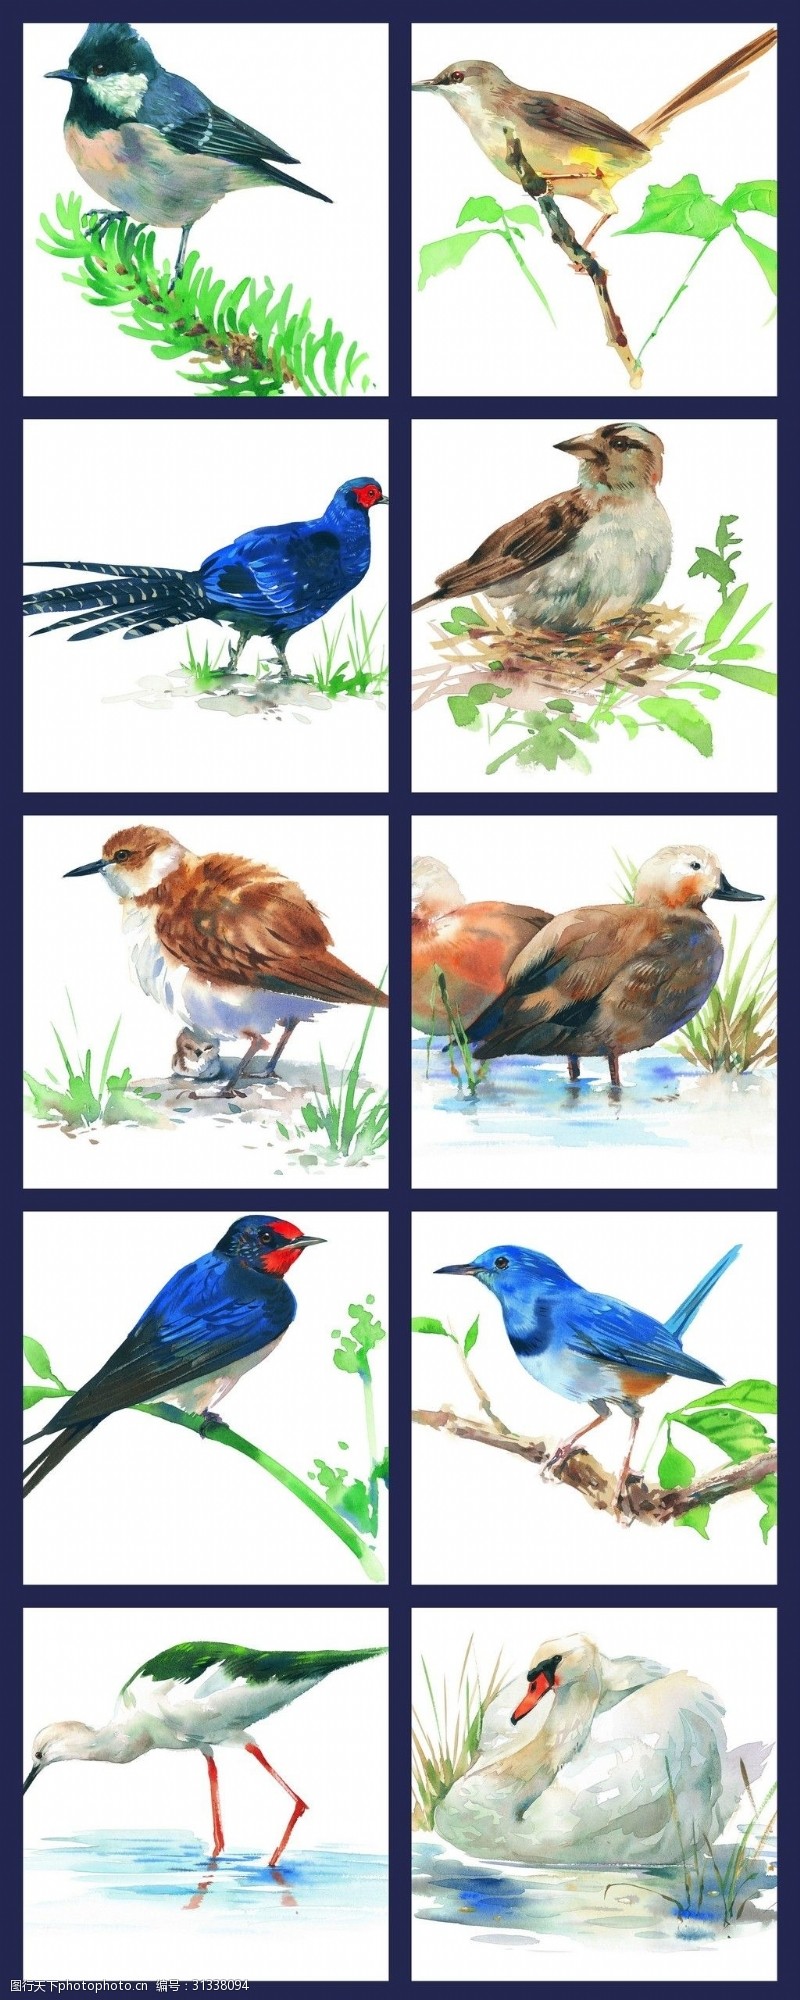 小鸟等彩绘鸟类飞禽素材收集绘画五颜六色各类鸟